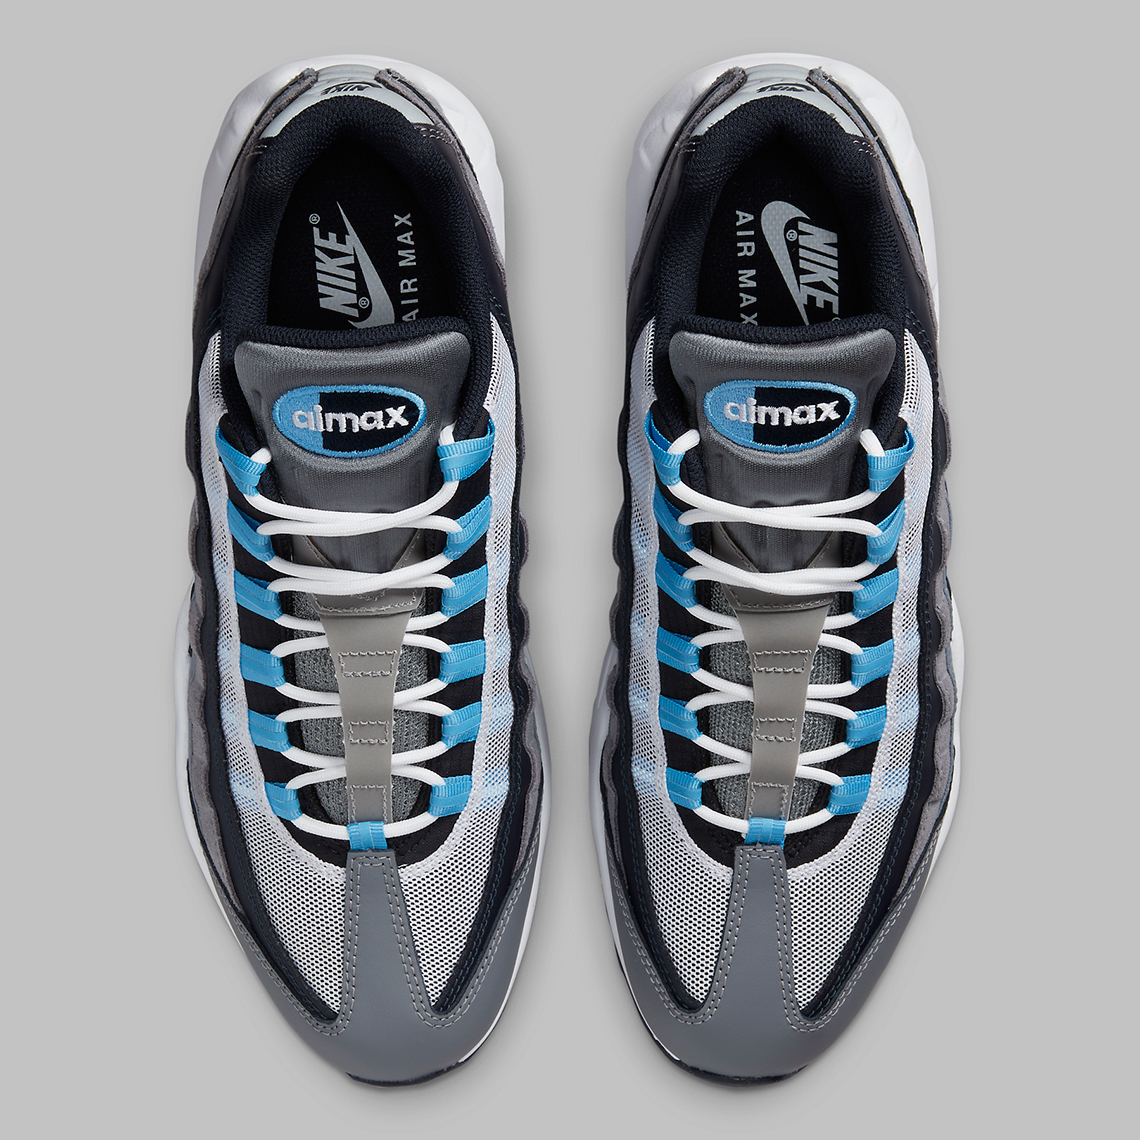 1670692244 955 Diferentes tonos de azul acentuan esta escala de grises Nike